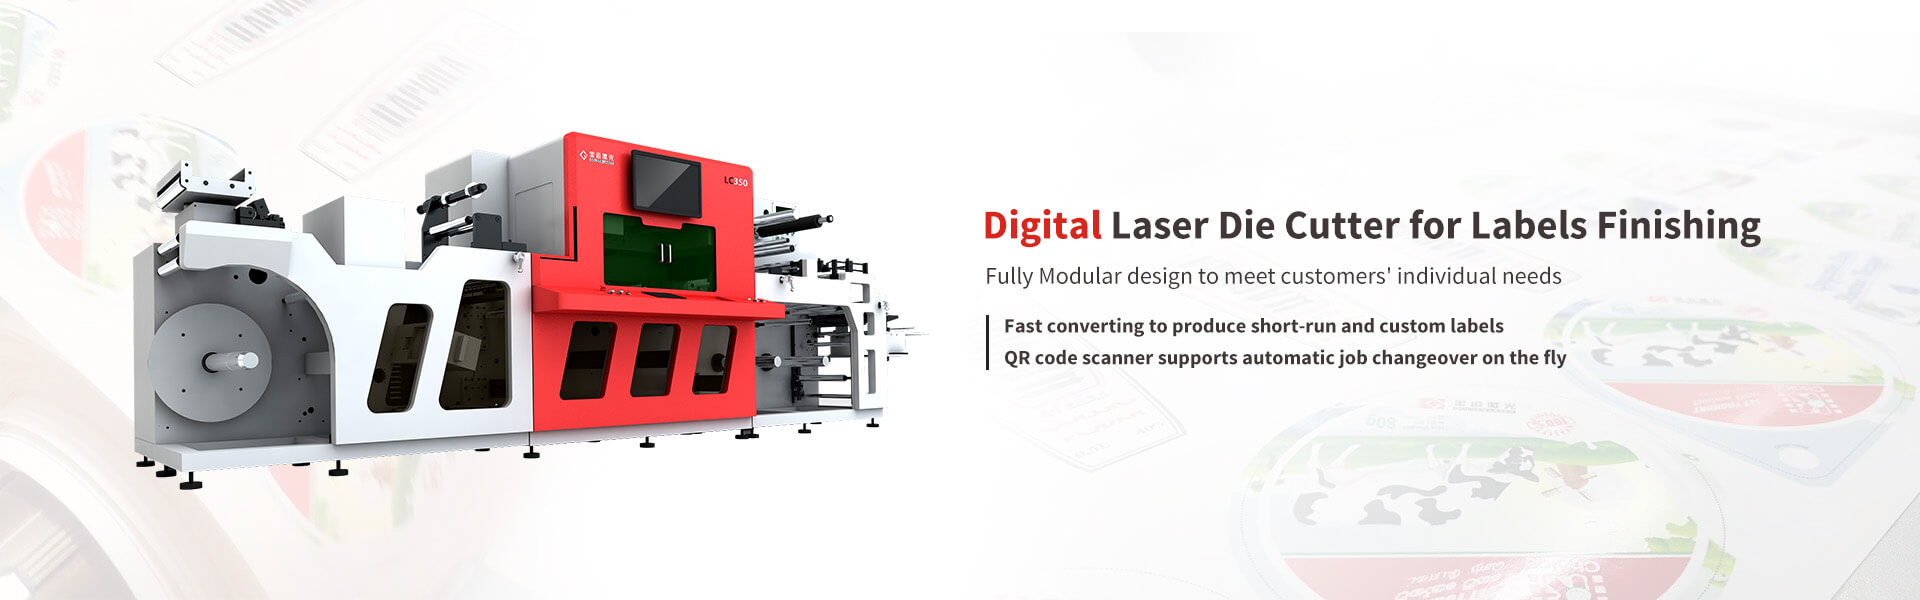 laser die cutting machine - goldenlaserbanner